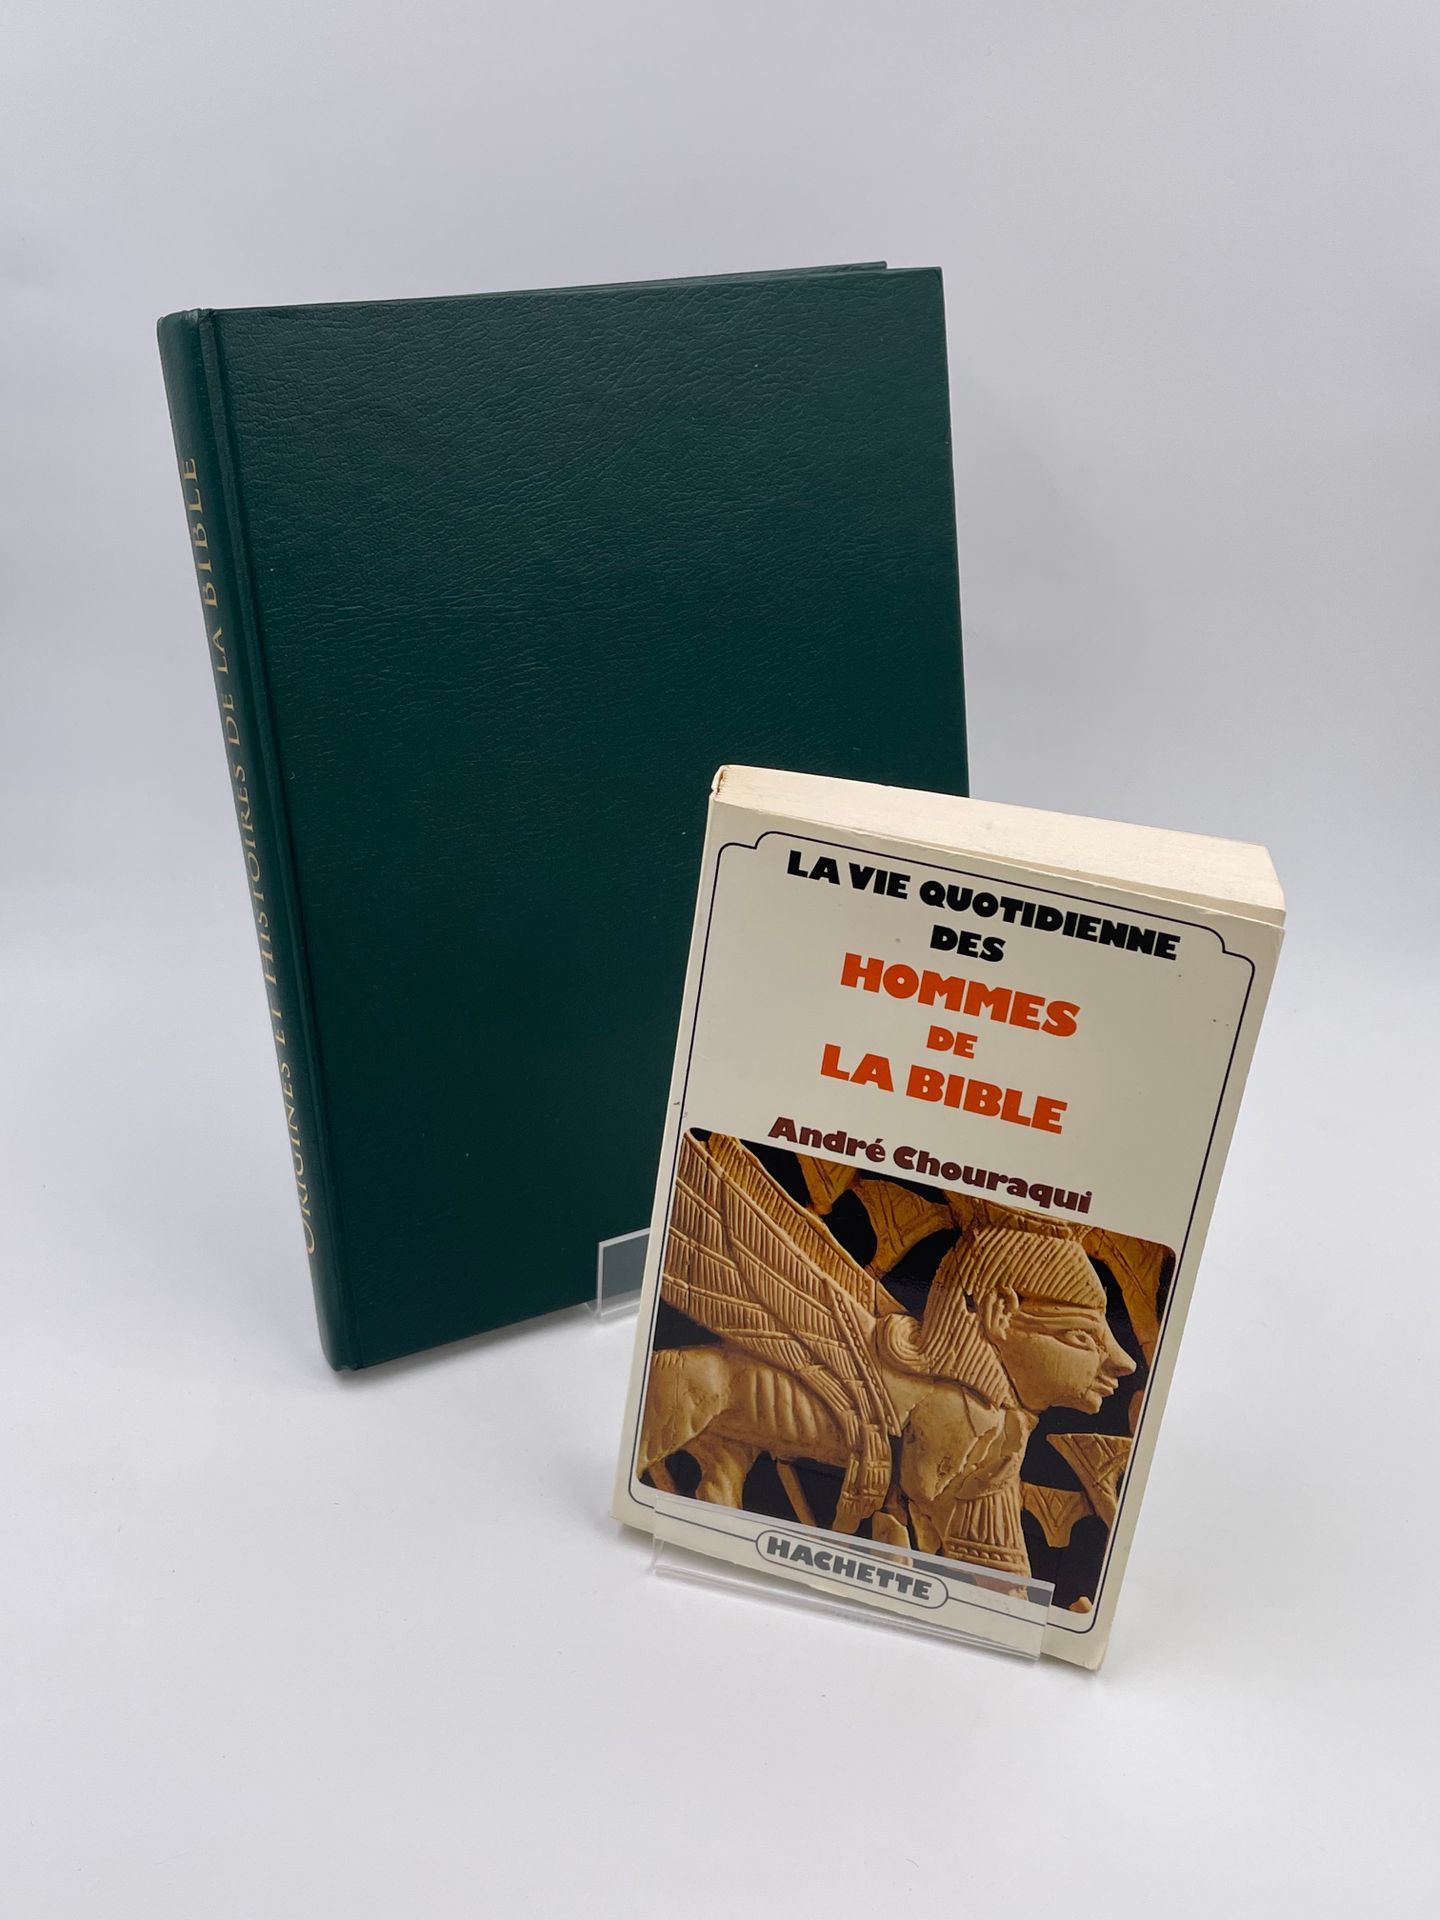 Null 2 volumi: 

- LA VIE QUOTIDIENNE DES HOMMES DE LA BIBLE", André Chouraqui, &hellip;